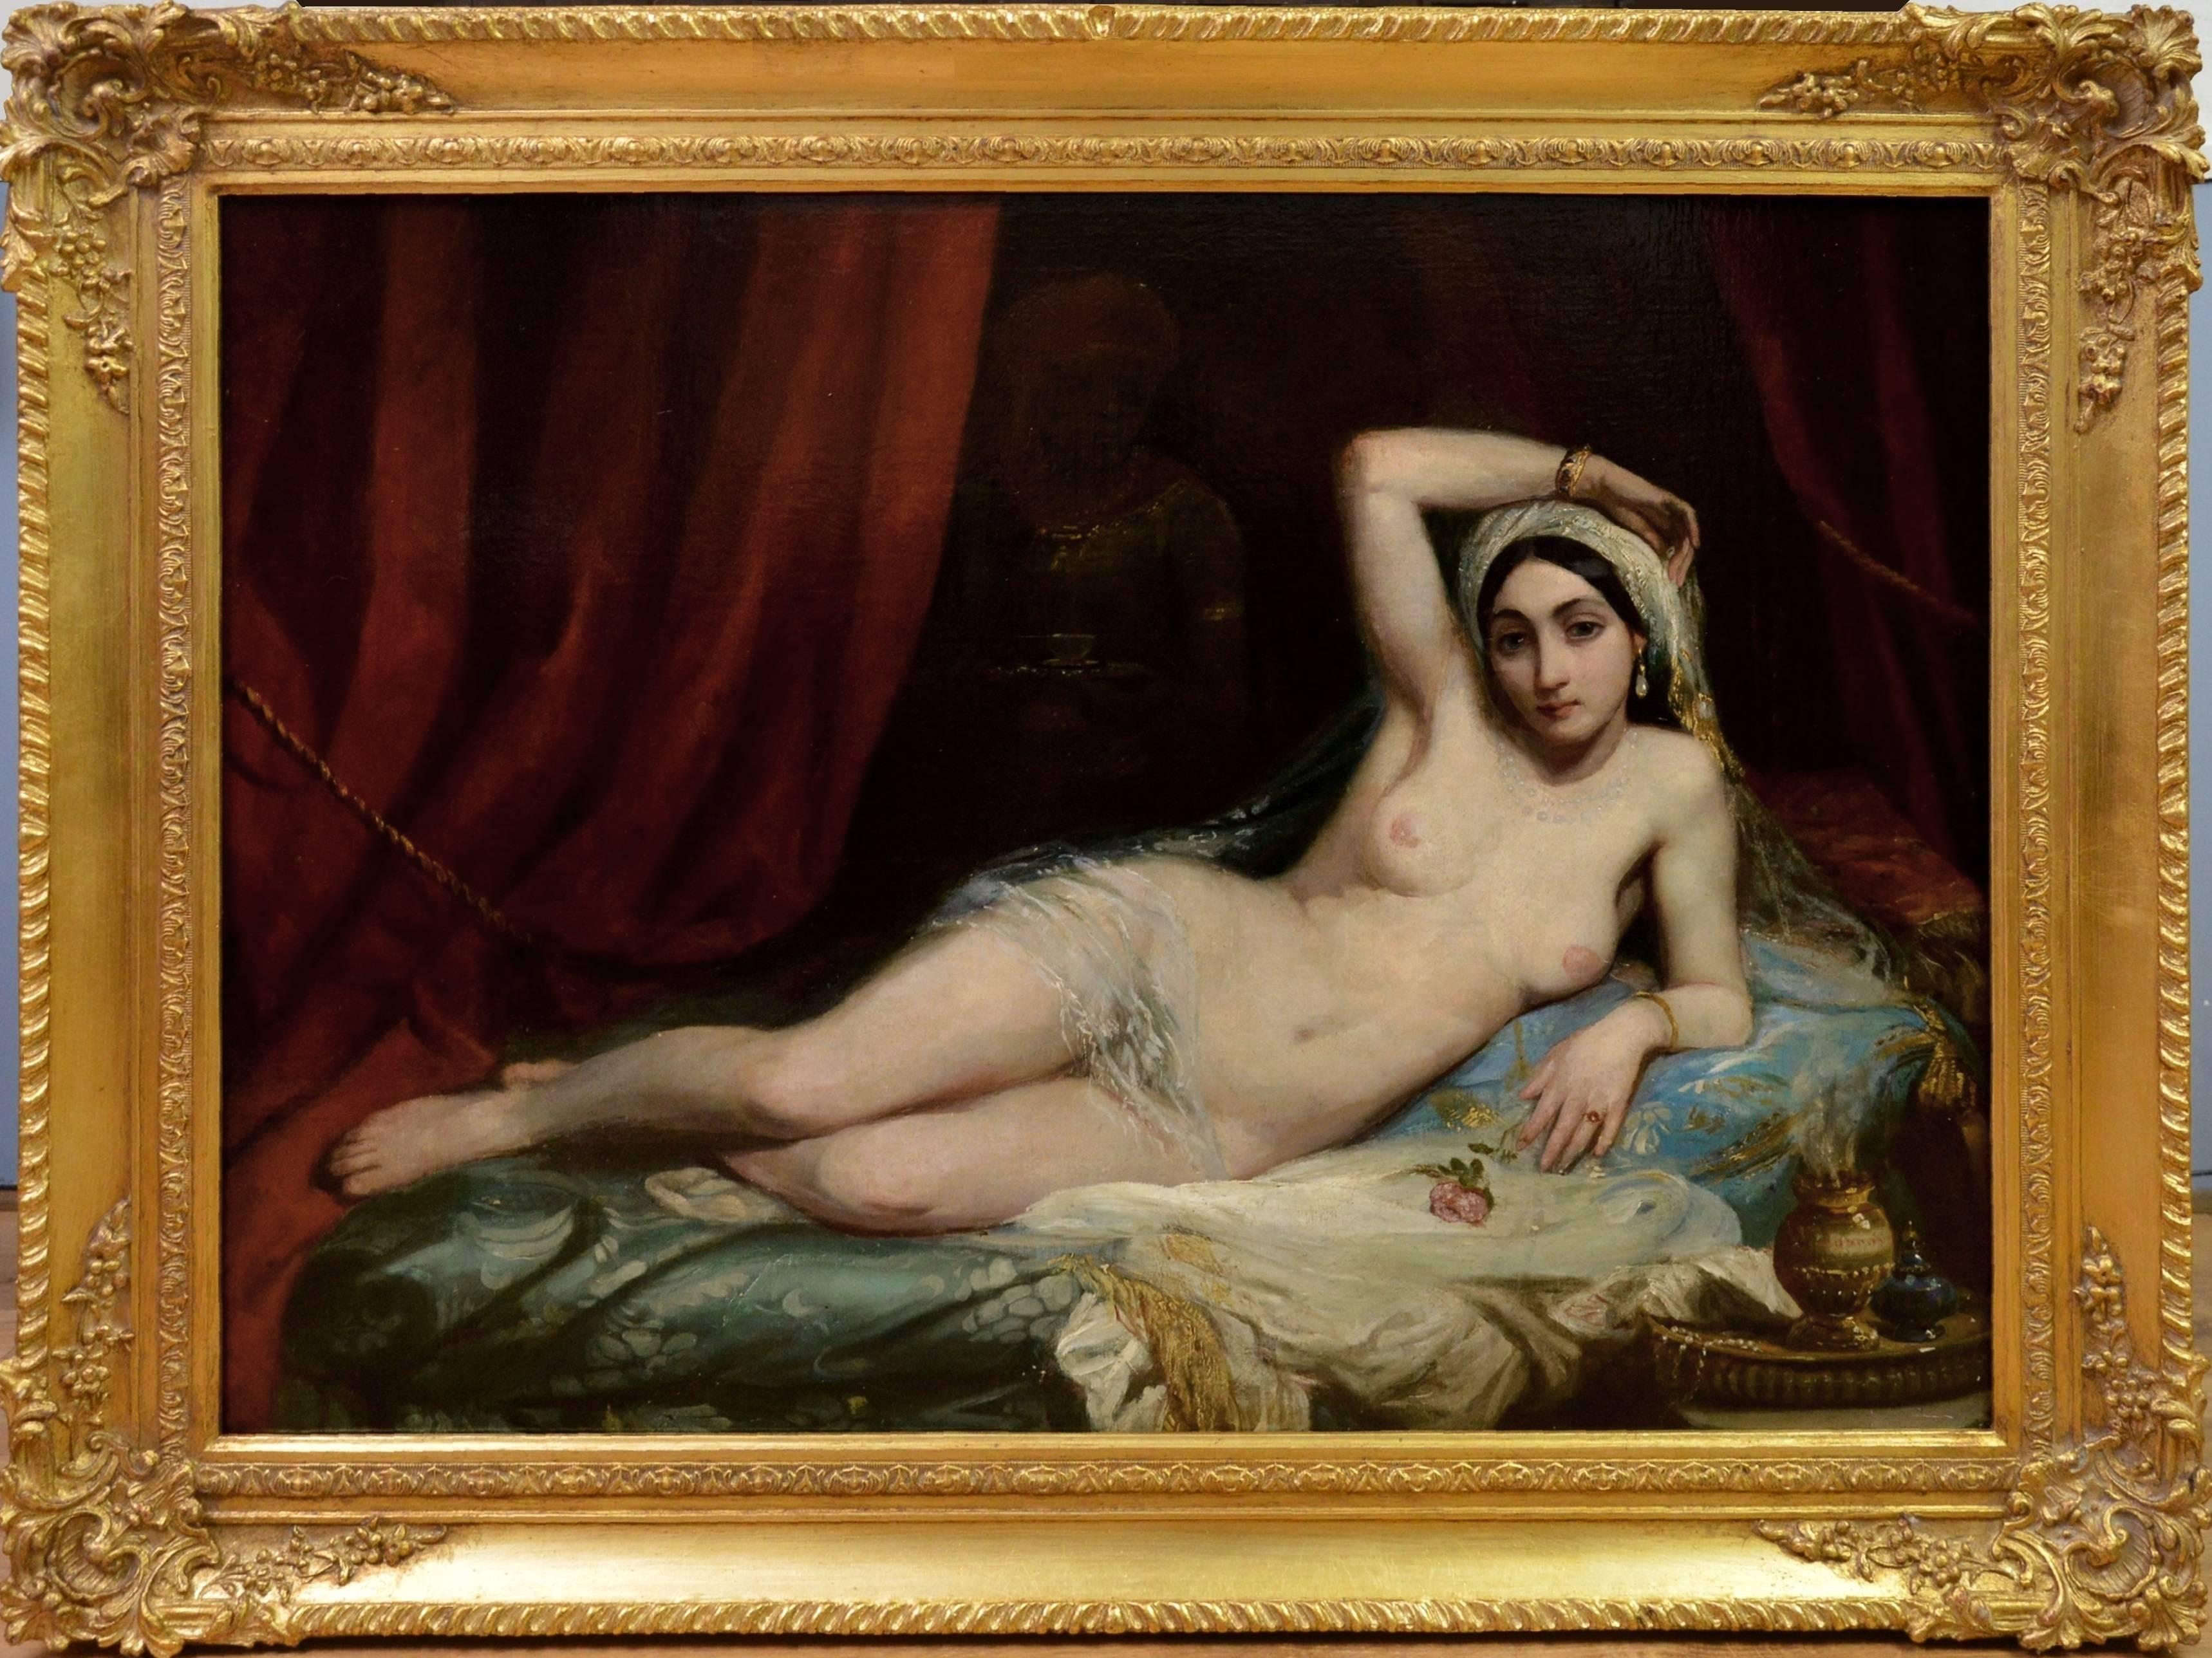 Nude Painting Adrien-Henri Tanoux - Une Odalisque - Peinture à l'huile de nu orientaliste du 19ème siècle - Fille du harem